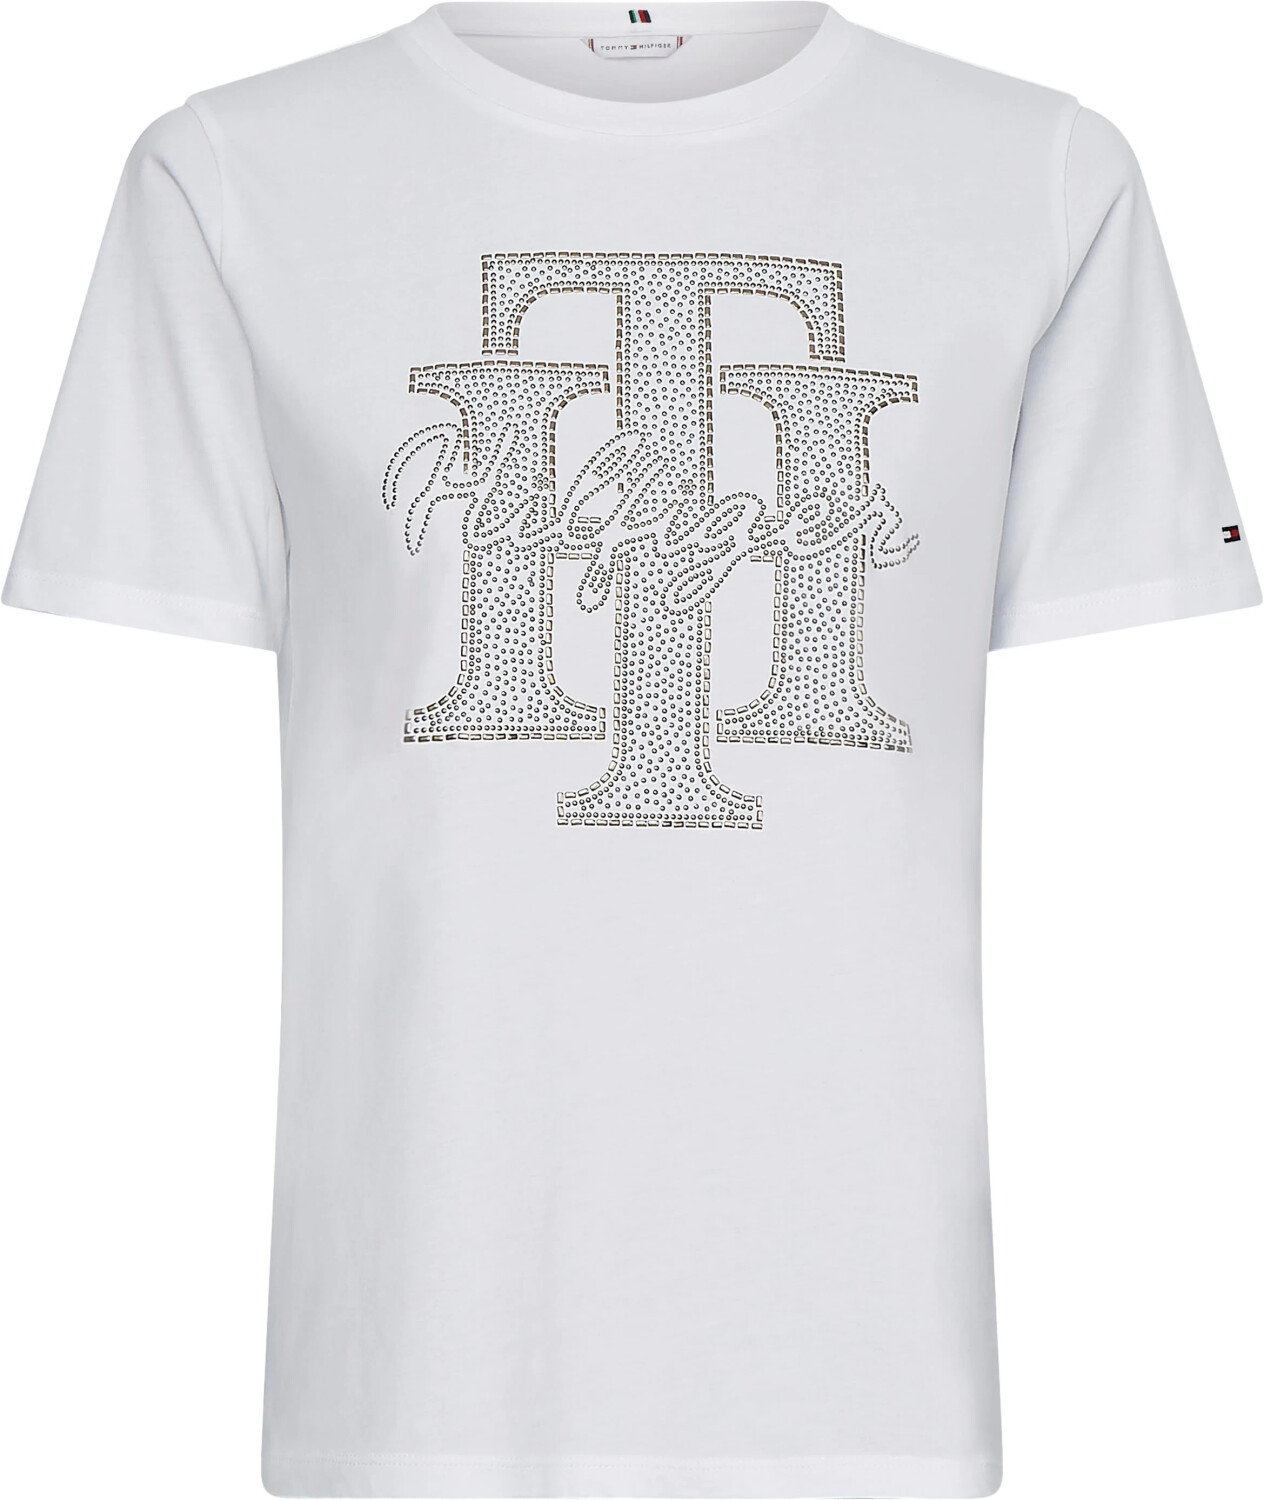 Tommy Hilfiger Bio-Baumwoll-T-Shirt mit bei 25,50 ab (WW0WW32655) Kristall-Monogramm Preisvergleich | €